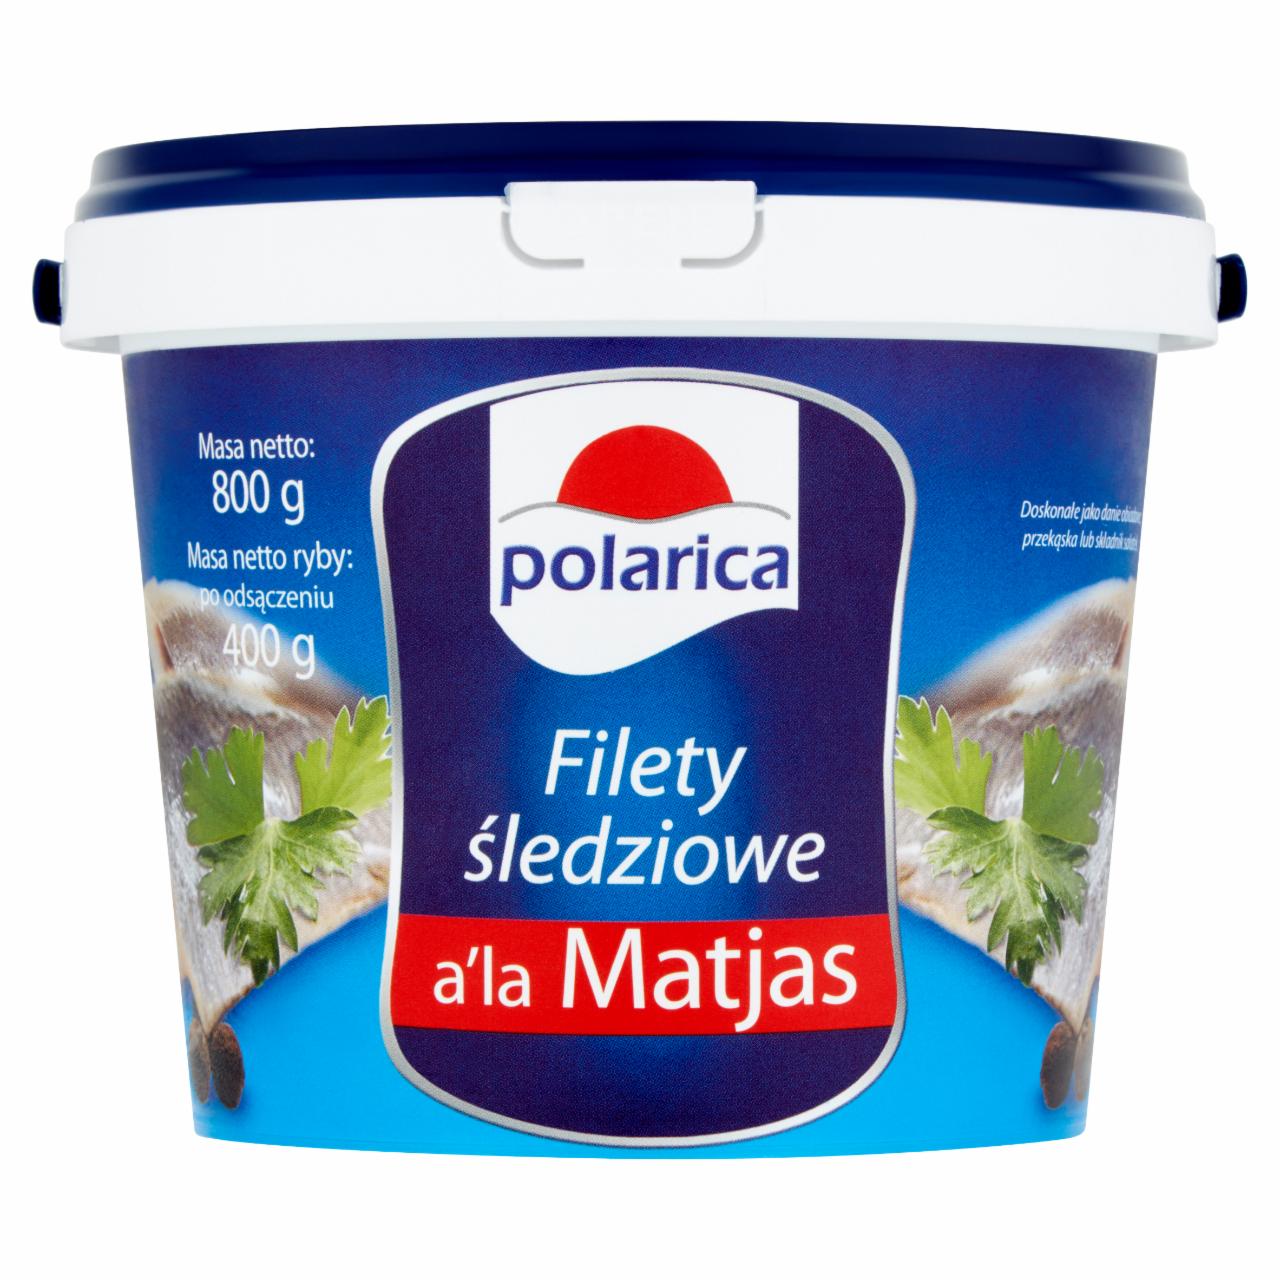 Zdjęcia - Polarica Filety śledziowe a'la Matjas 800 g